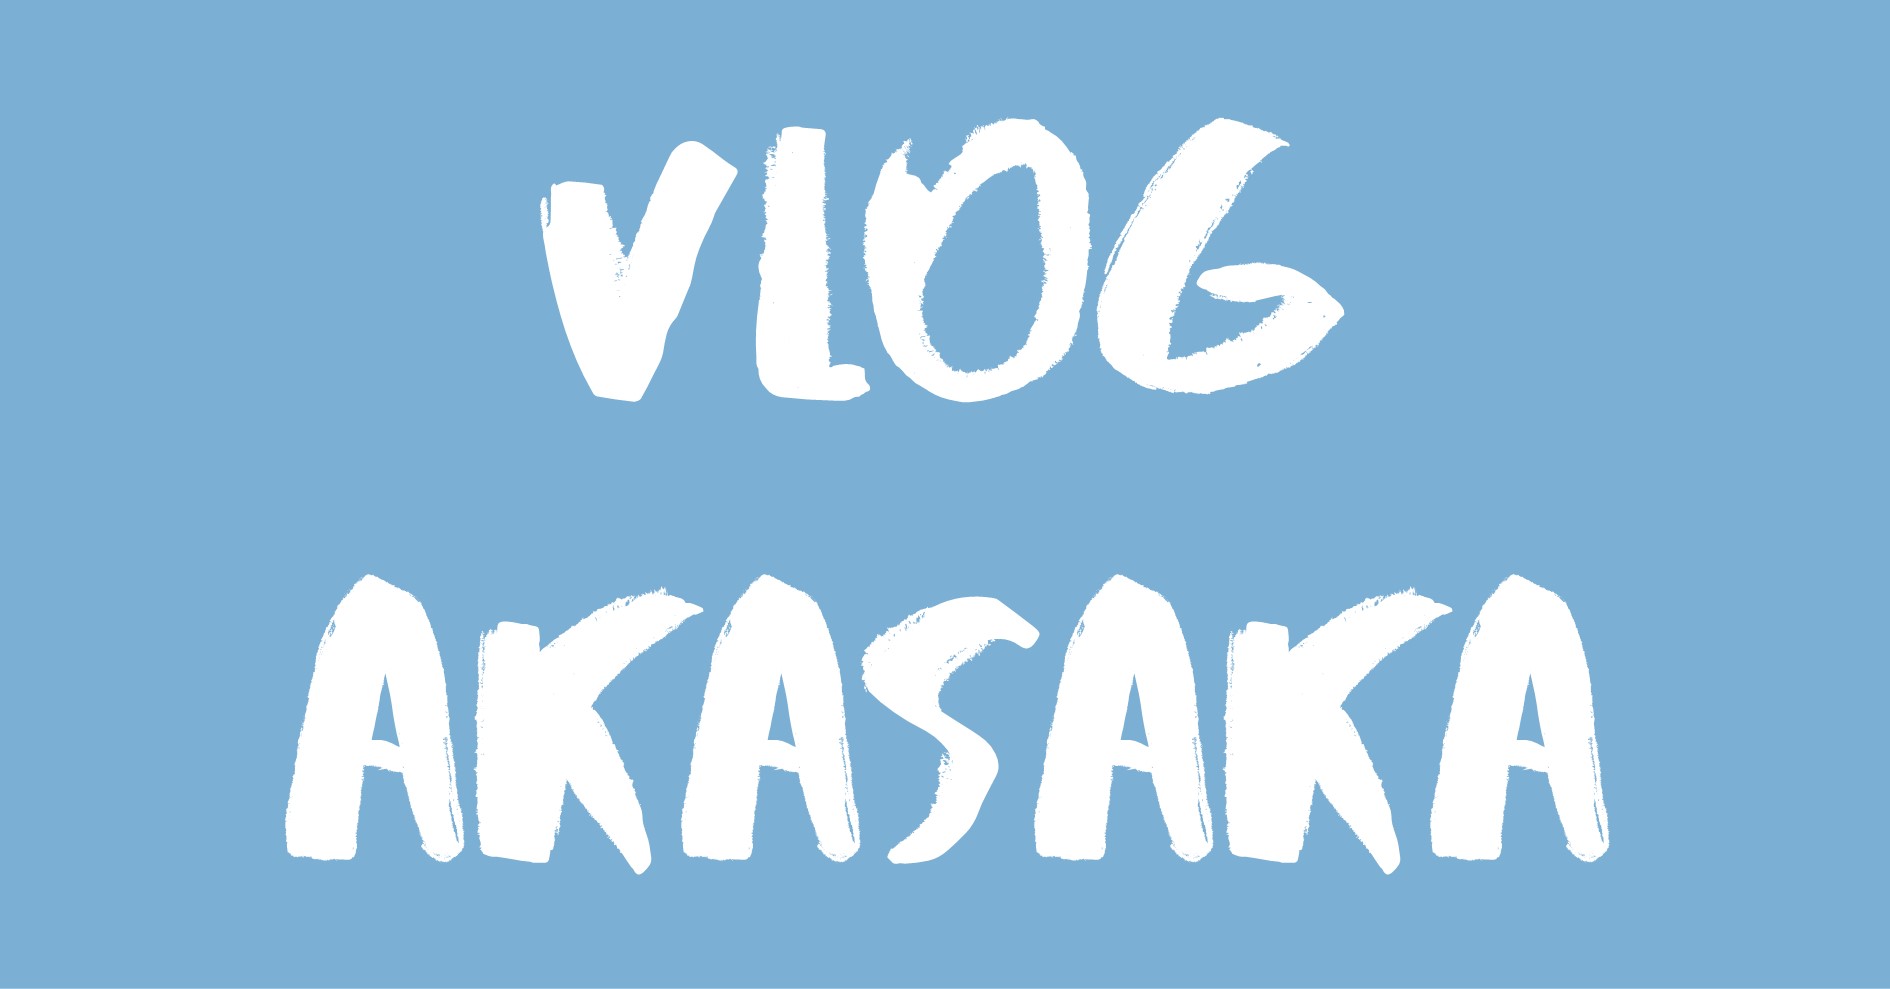 Vlog Akasaka